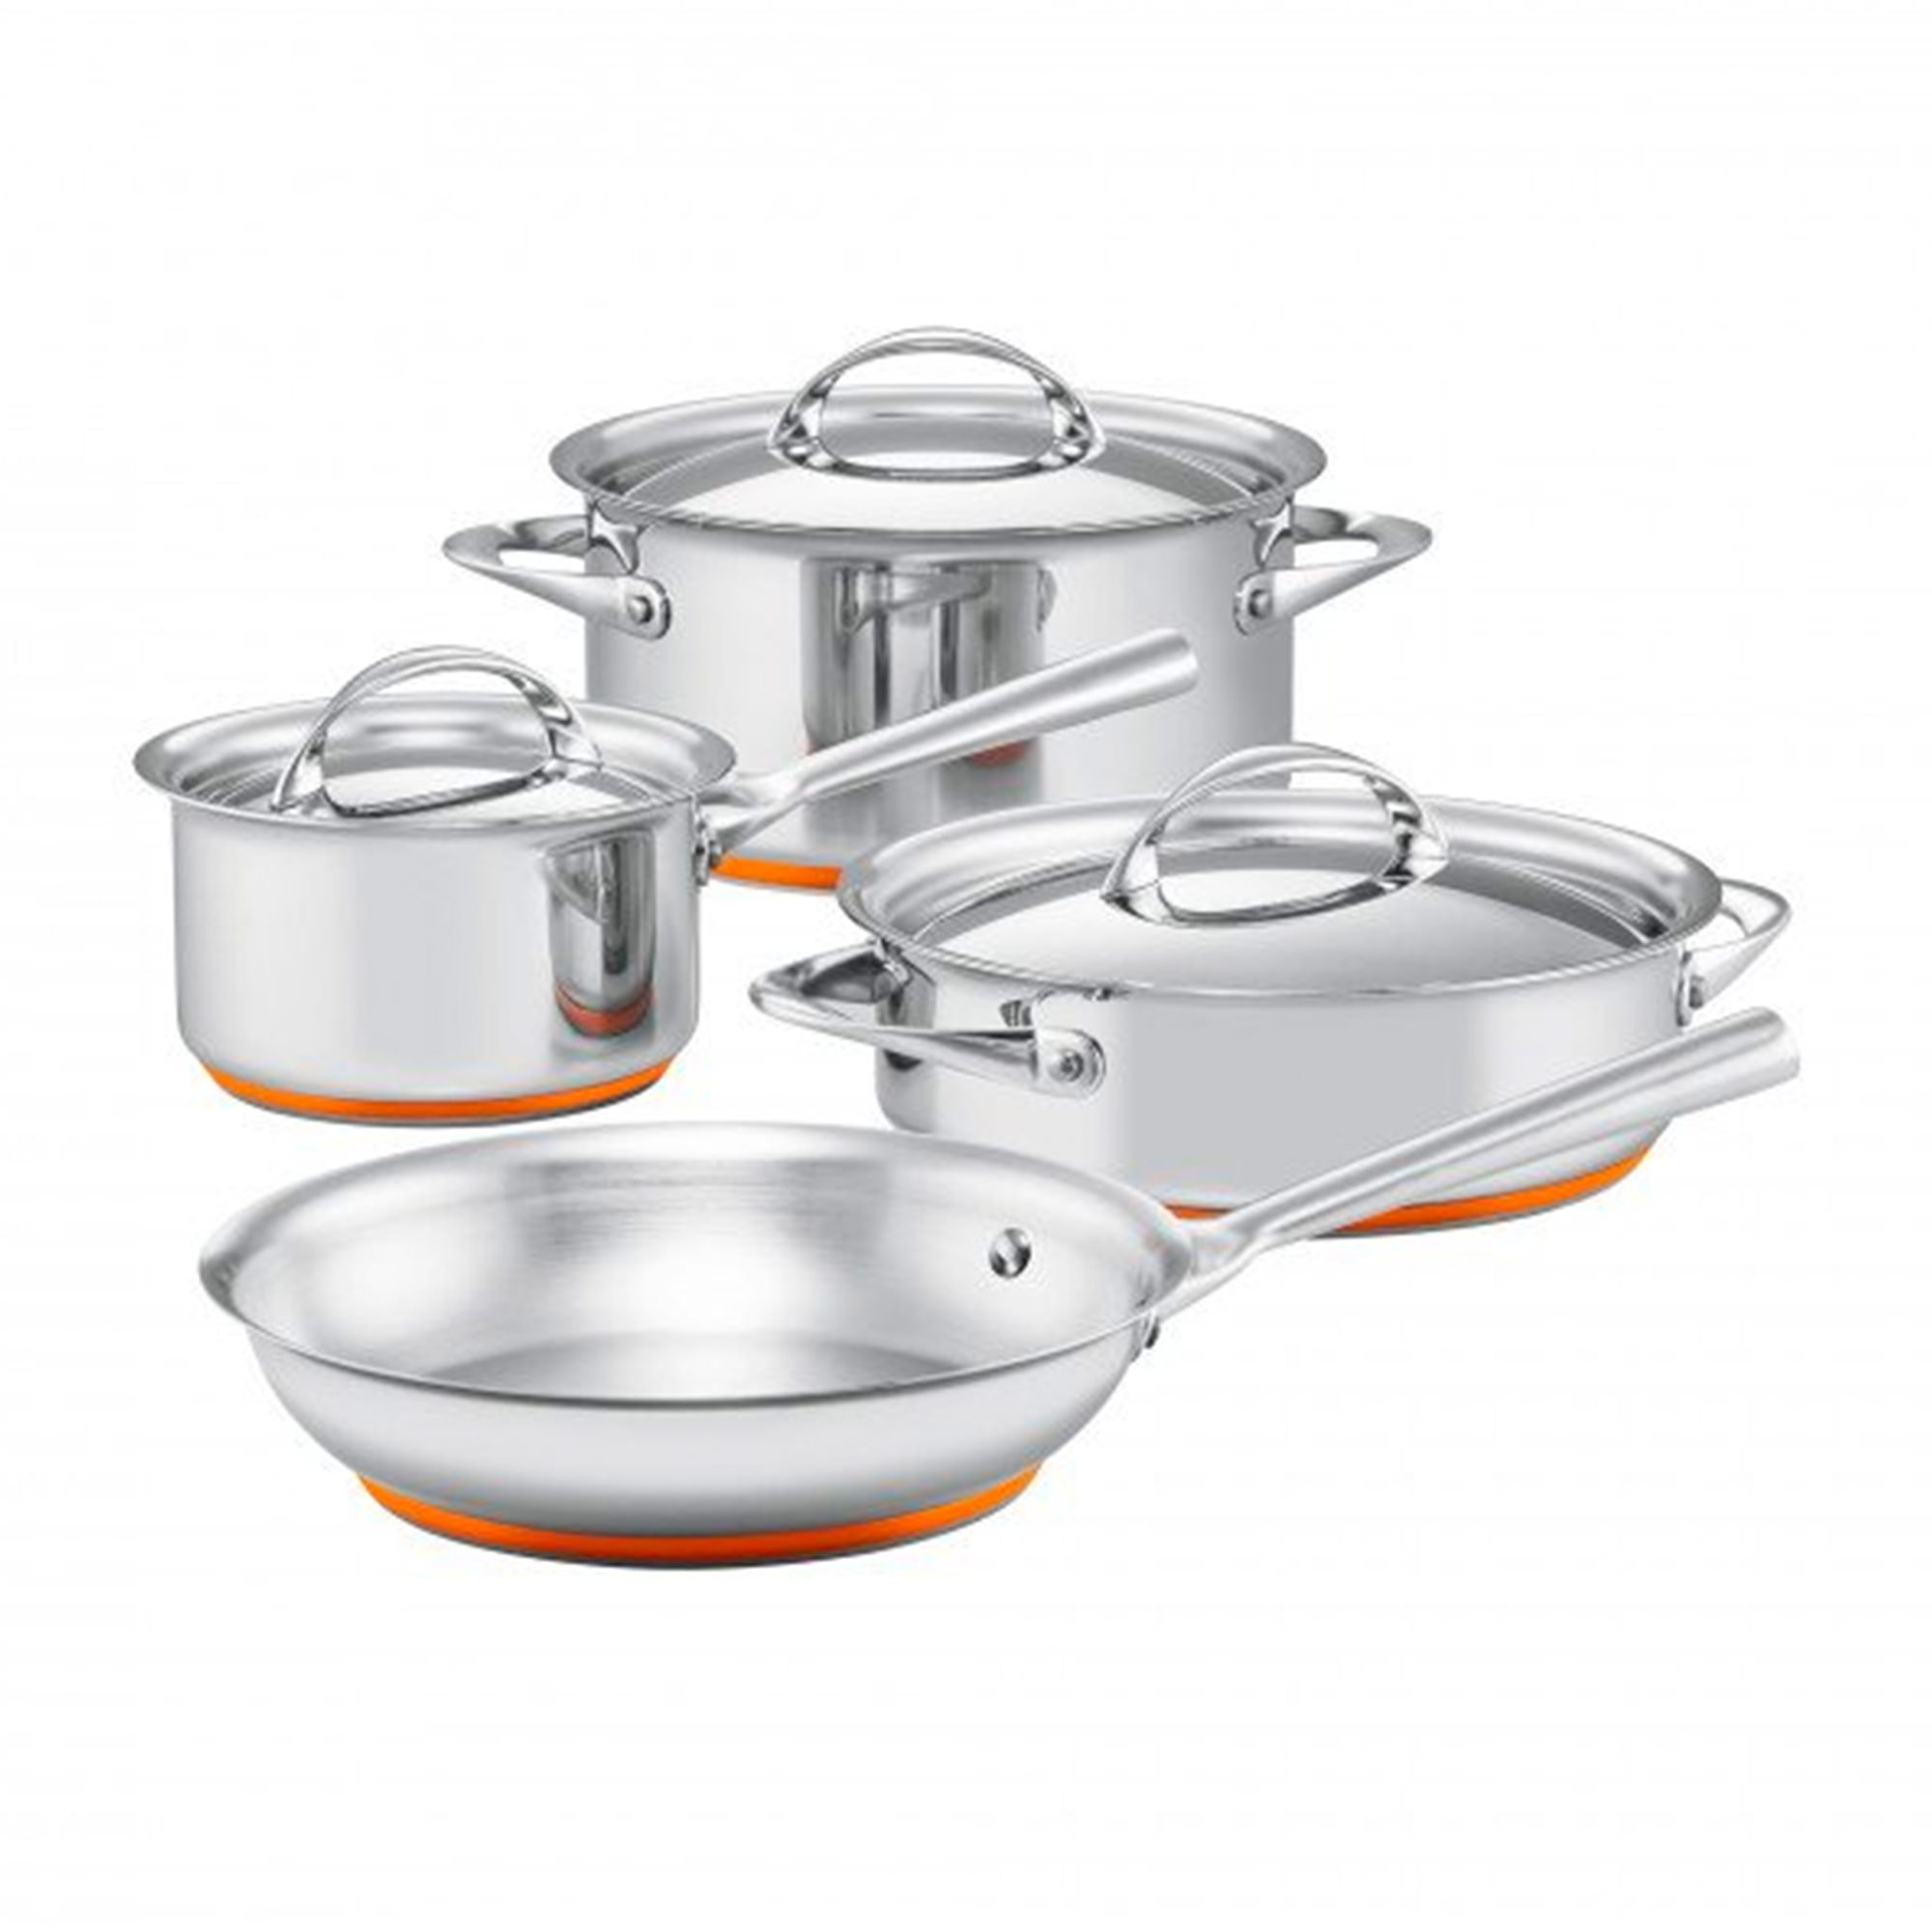 Essteele Per Vita 4pc Stainless Steel Cookware Set Image 1